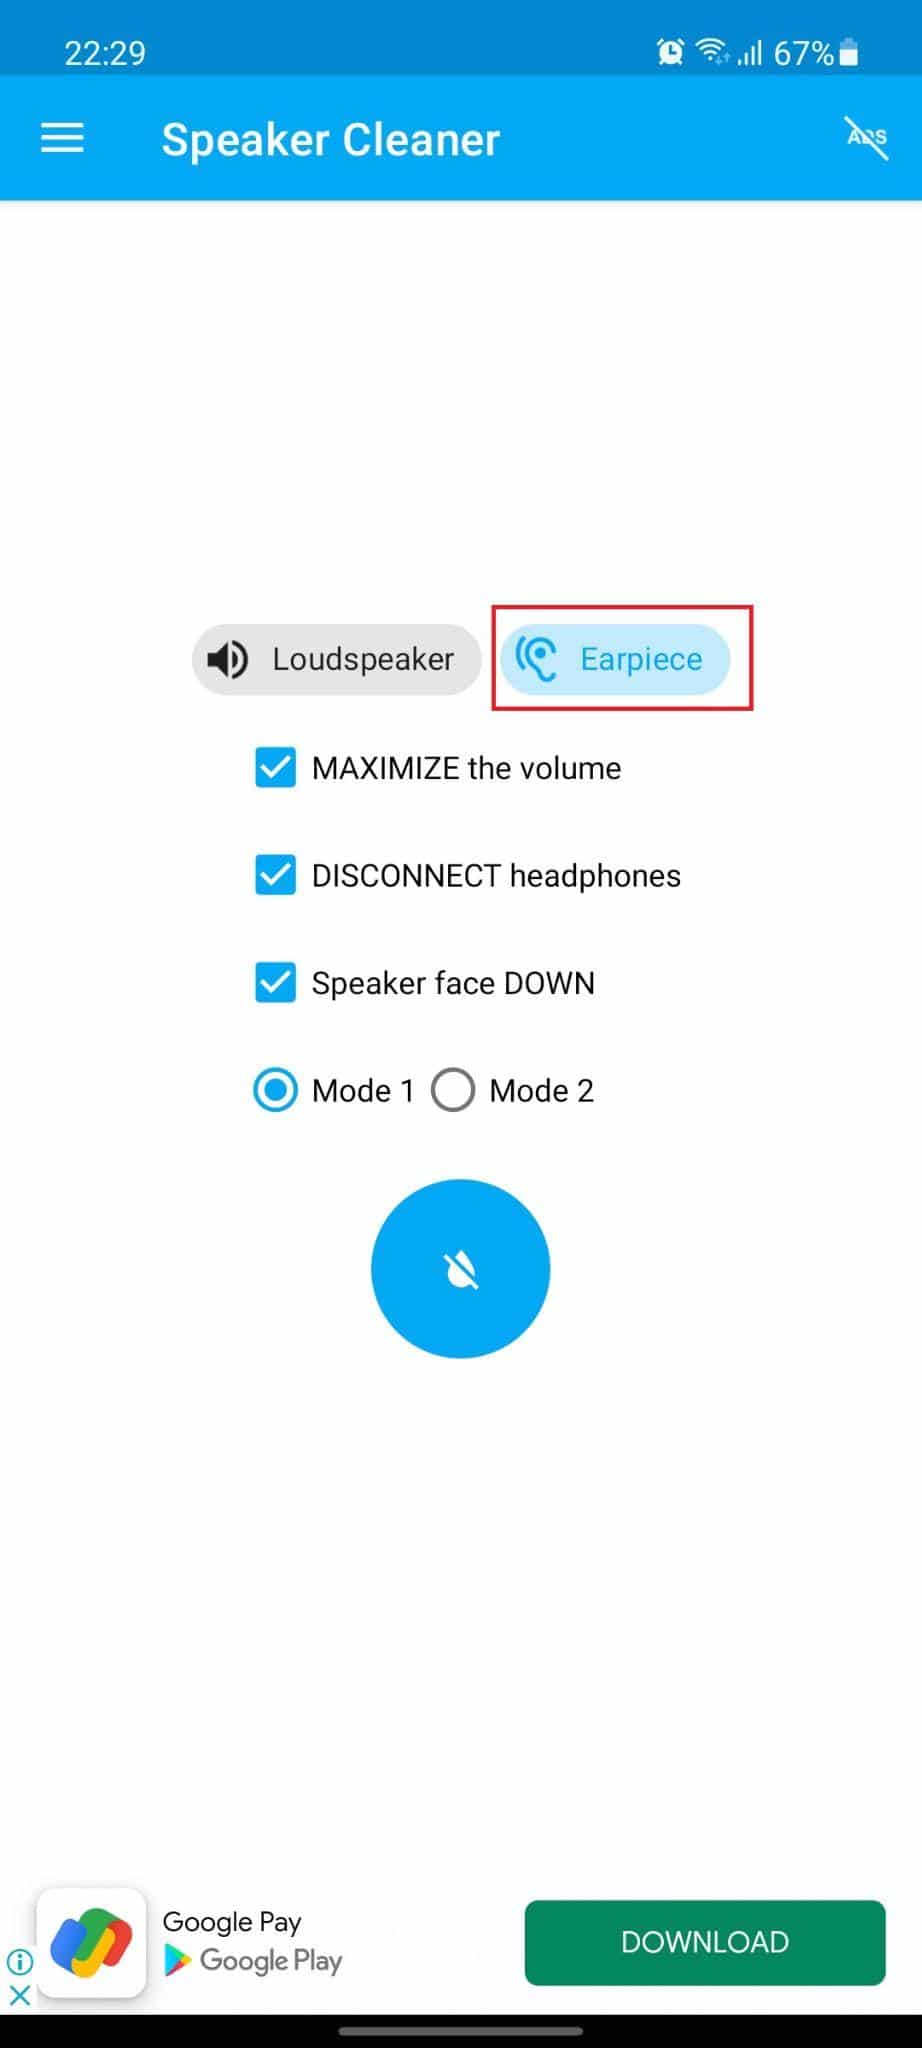 Super aplikacija za čiščenje zvočnikov. Način slušalke je označen. Kako popraviti poškodbe telefonskega zvočnika zaradi vode